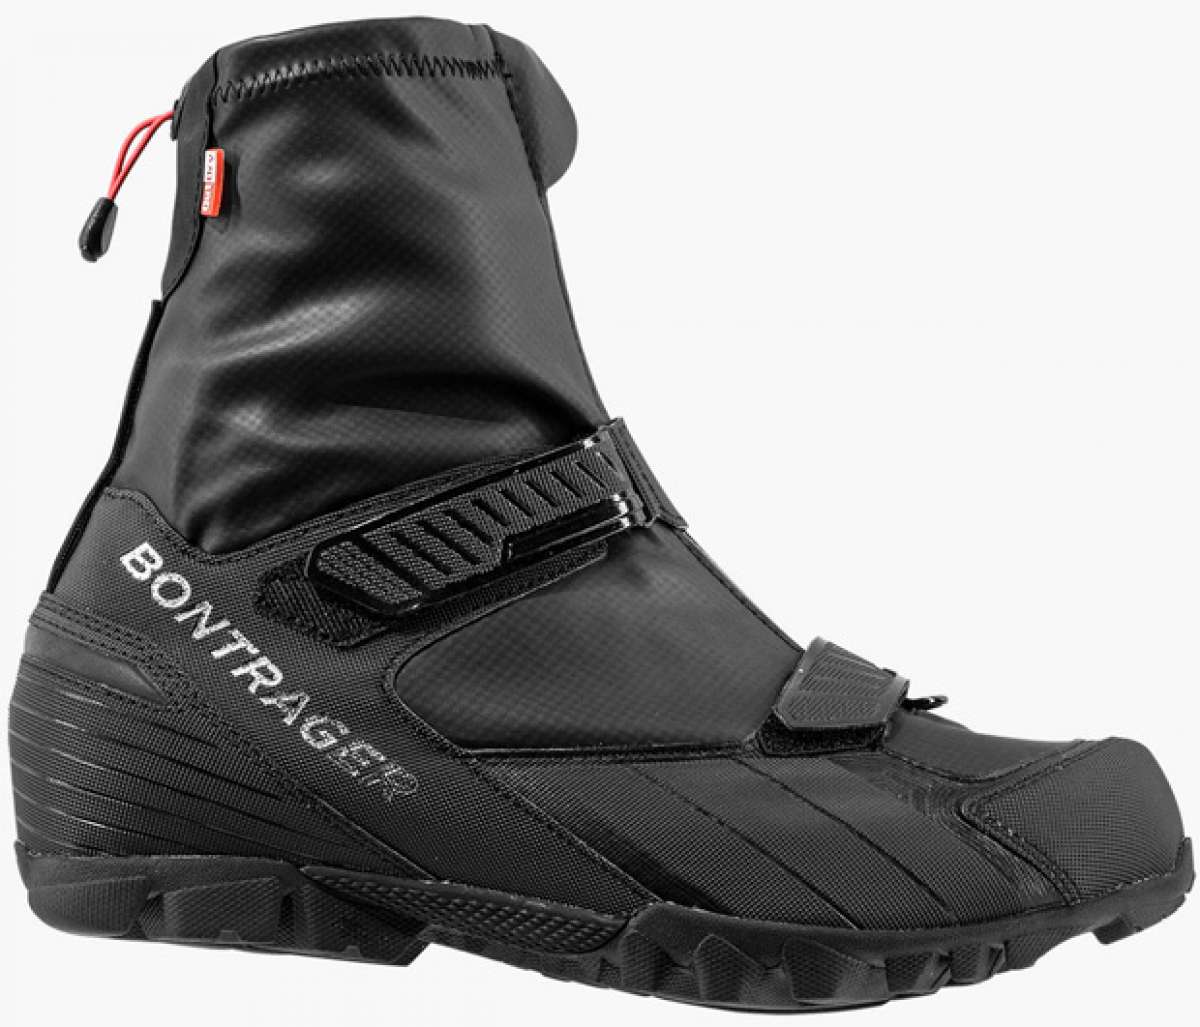 Bontrager OMW Winter Shoe, zapatillas de invierno para pedalear bajo cero